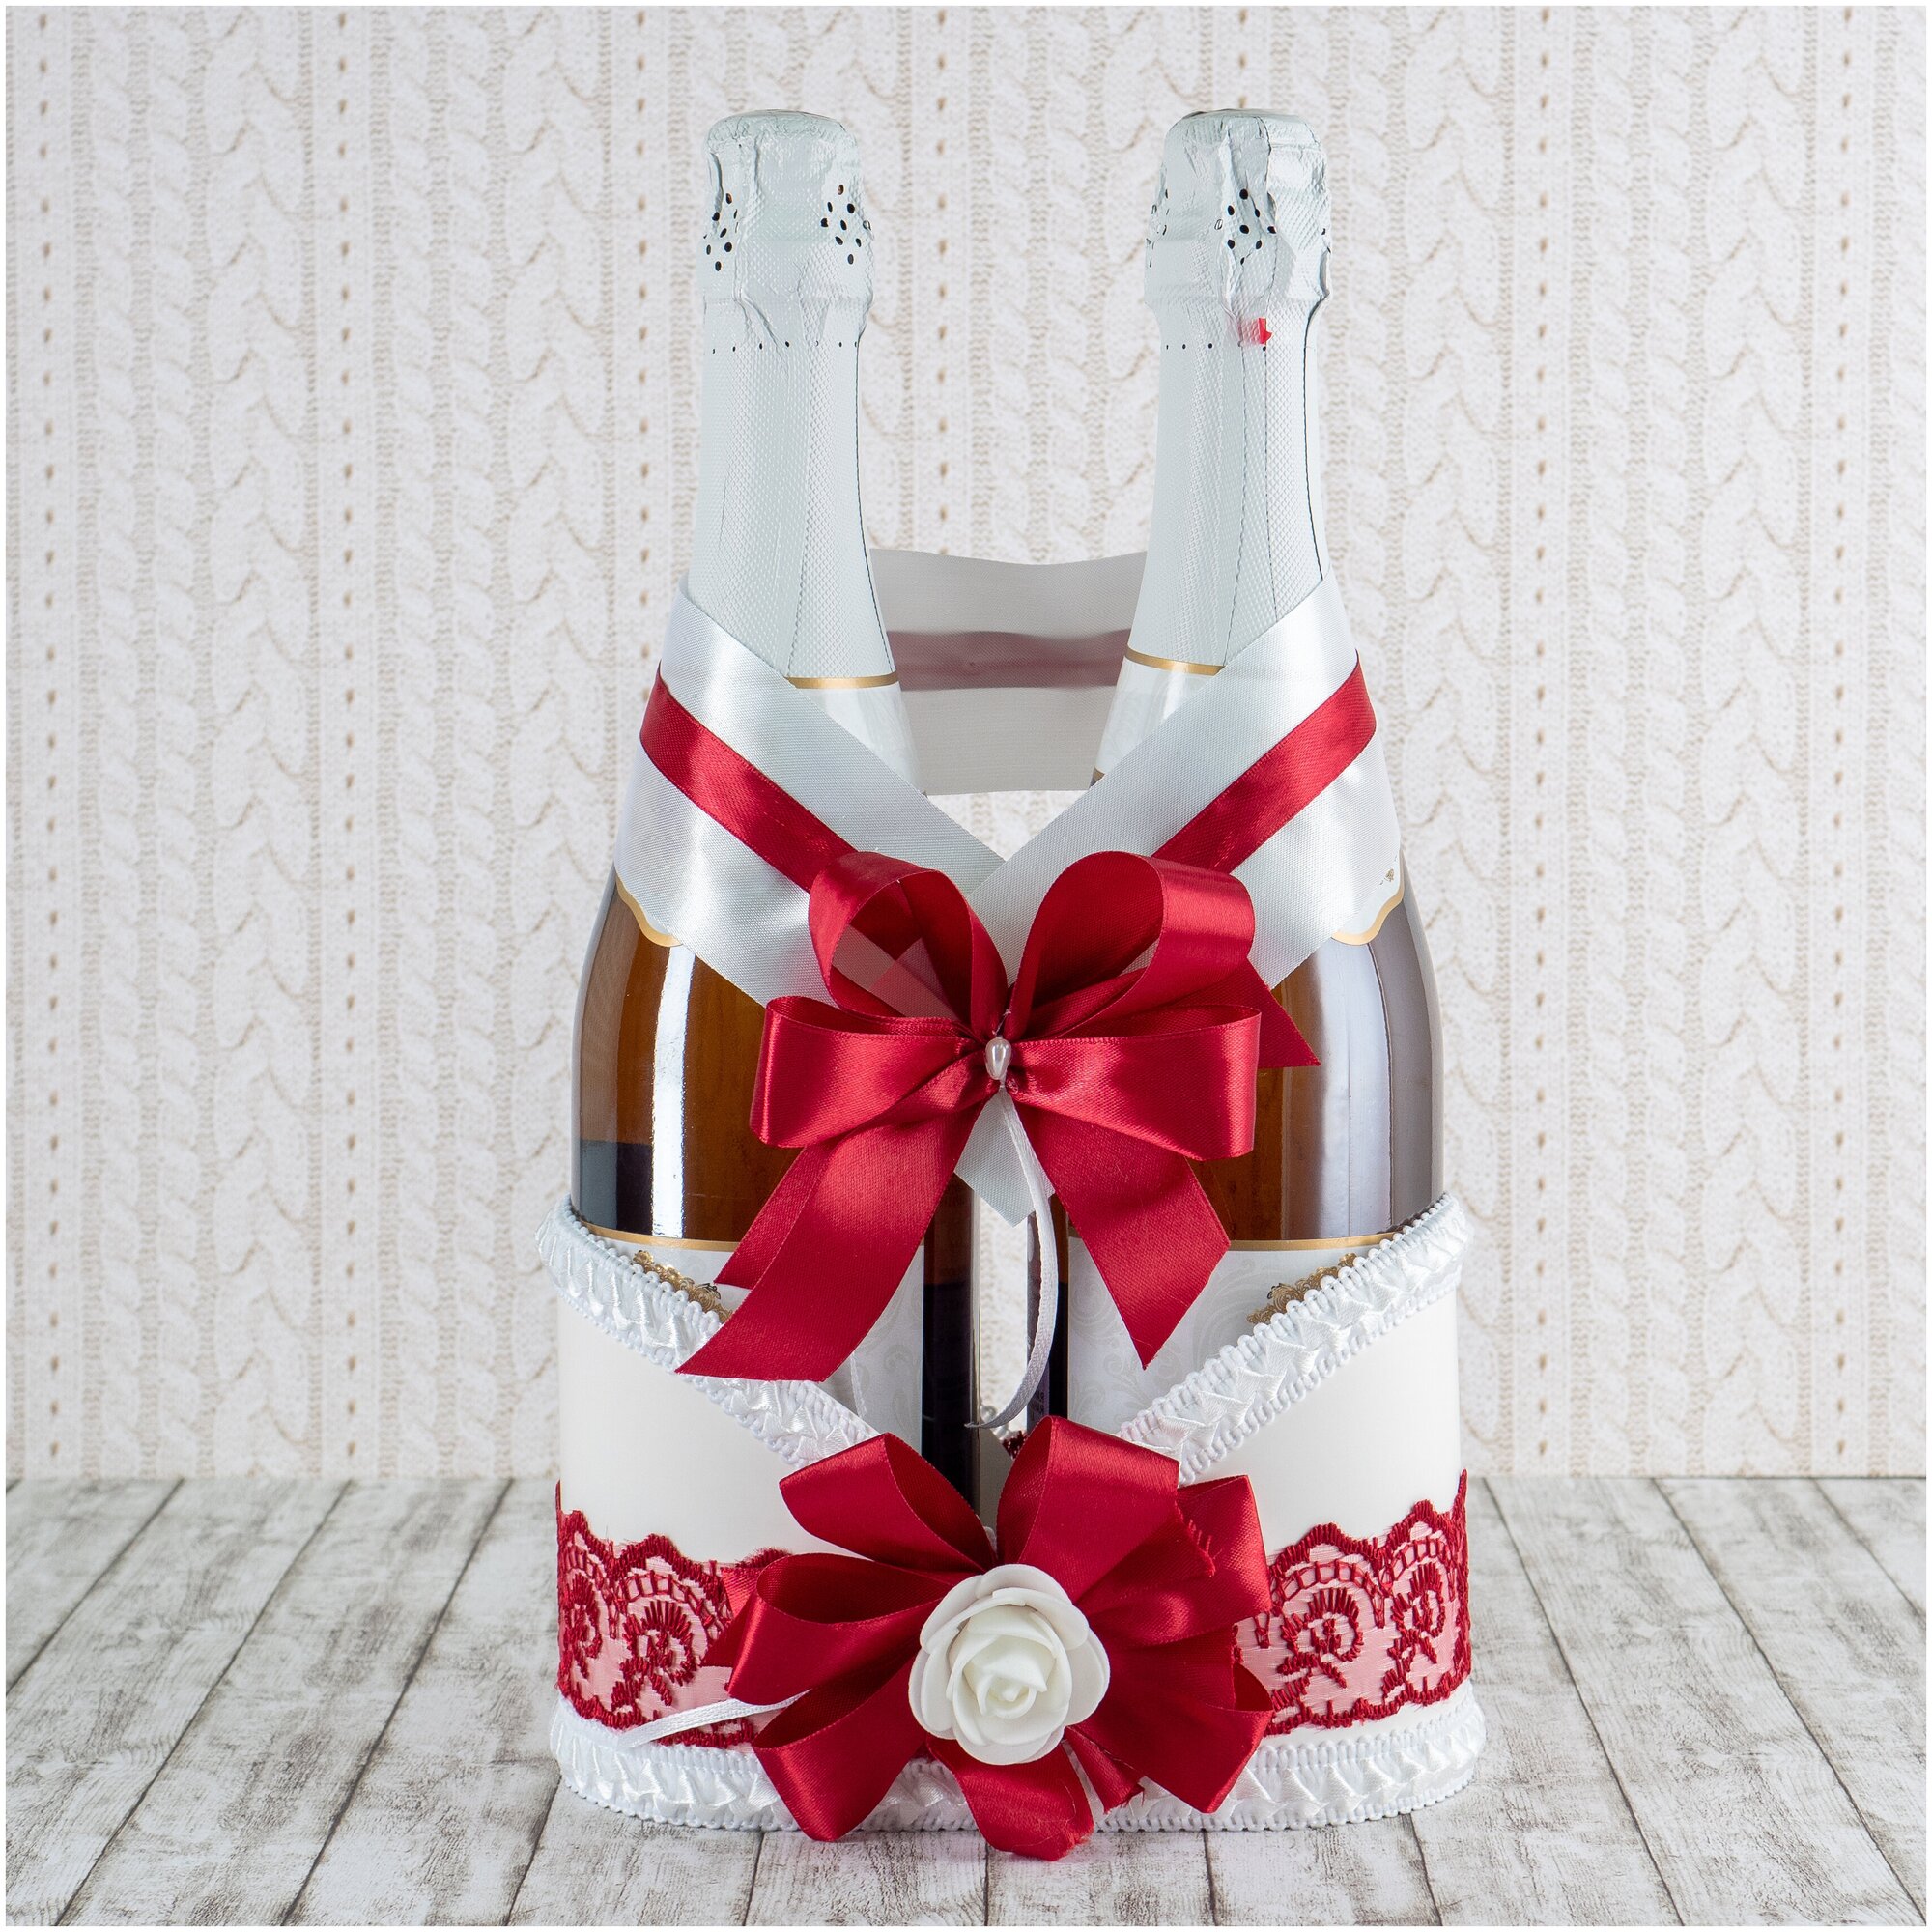 Свадебное украшение для шампанского - тубус и бант "Бордо" из белого картона с бордовым кружевом, атласными бантами и латексной розой белого цвета